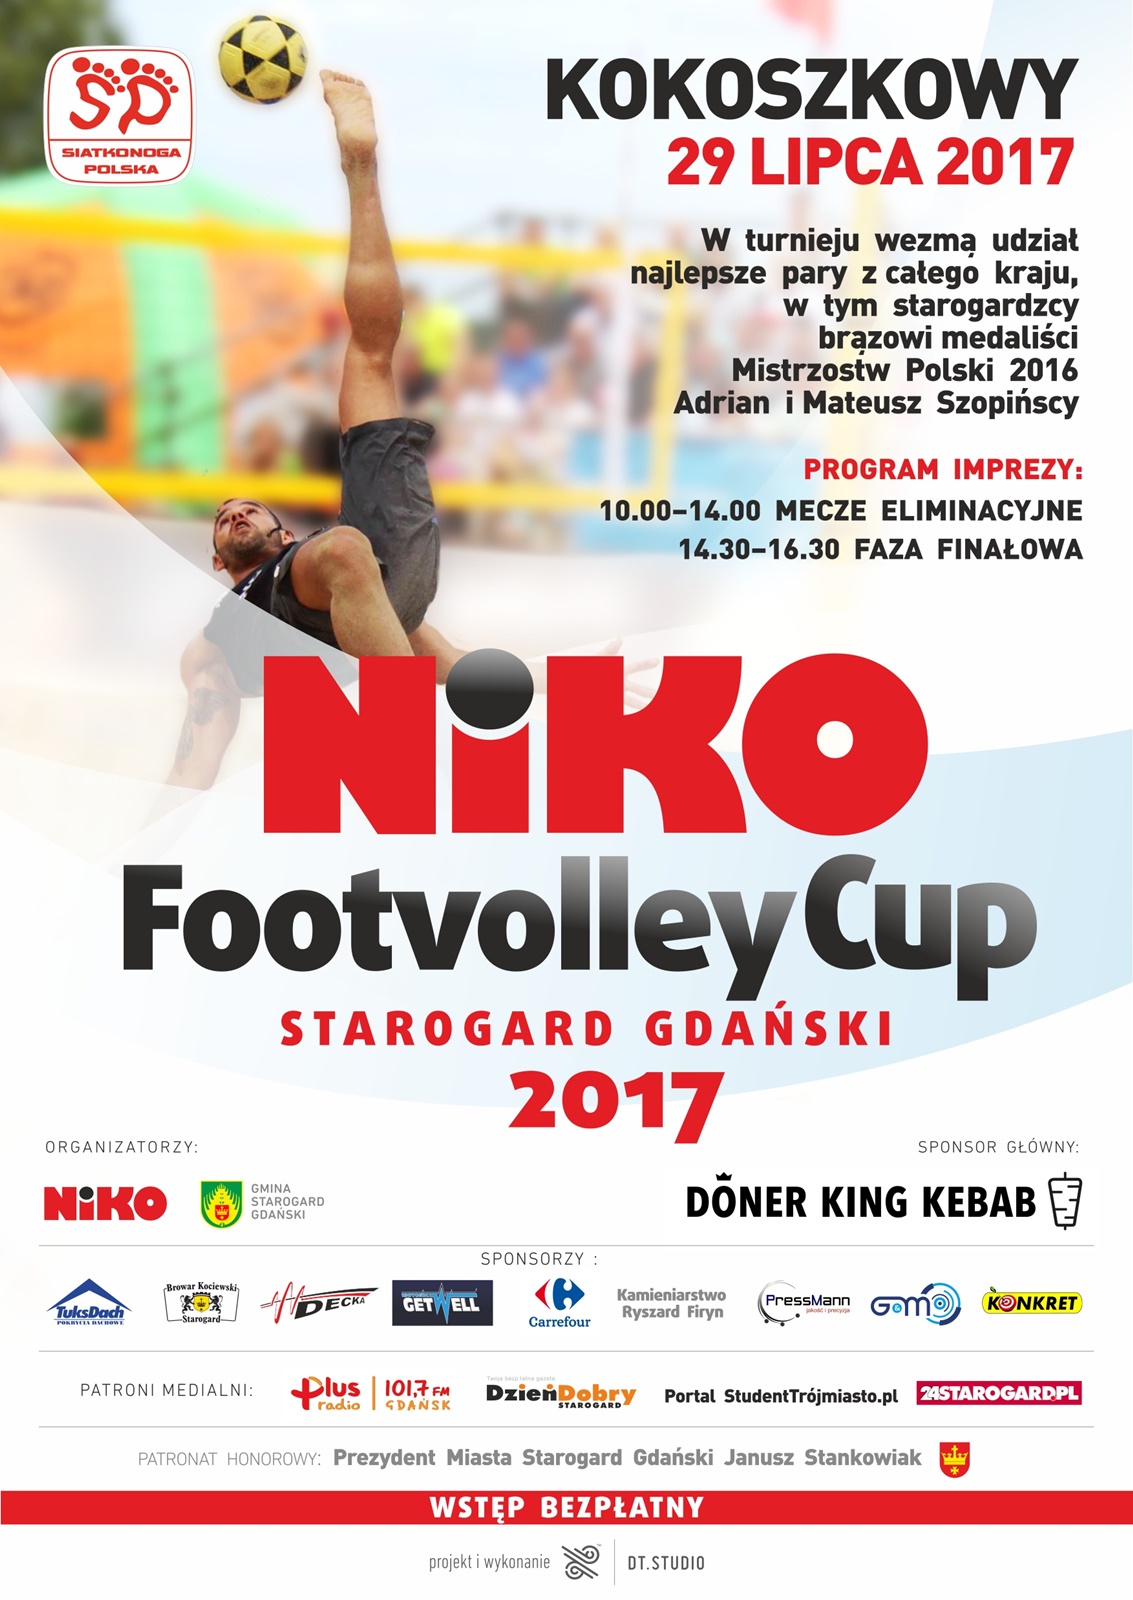 NIKO Footvolley Cup Starogard Gdański – czyli ogólnopolski turniej w siatkonogę na plaży!